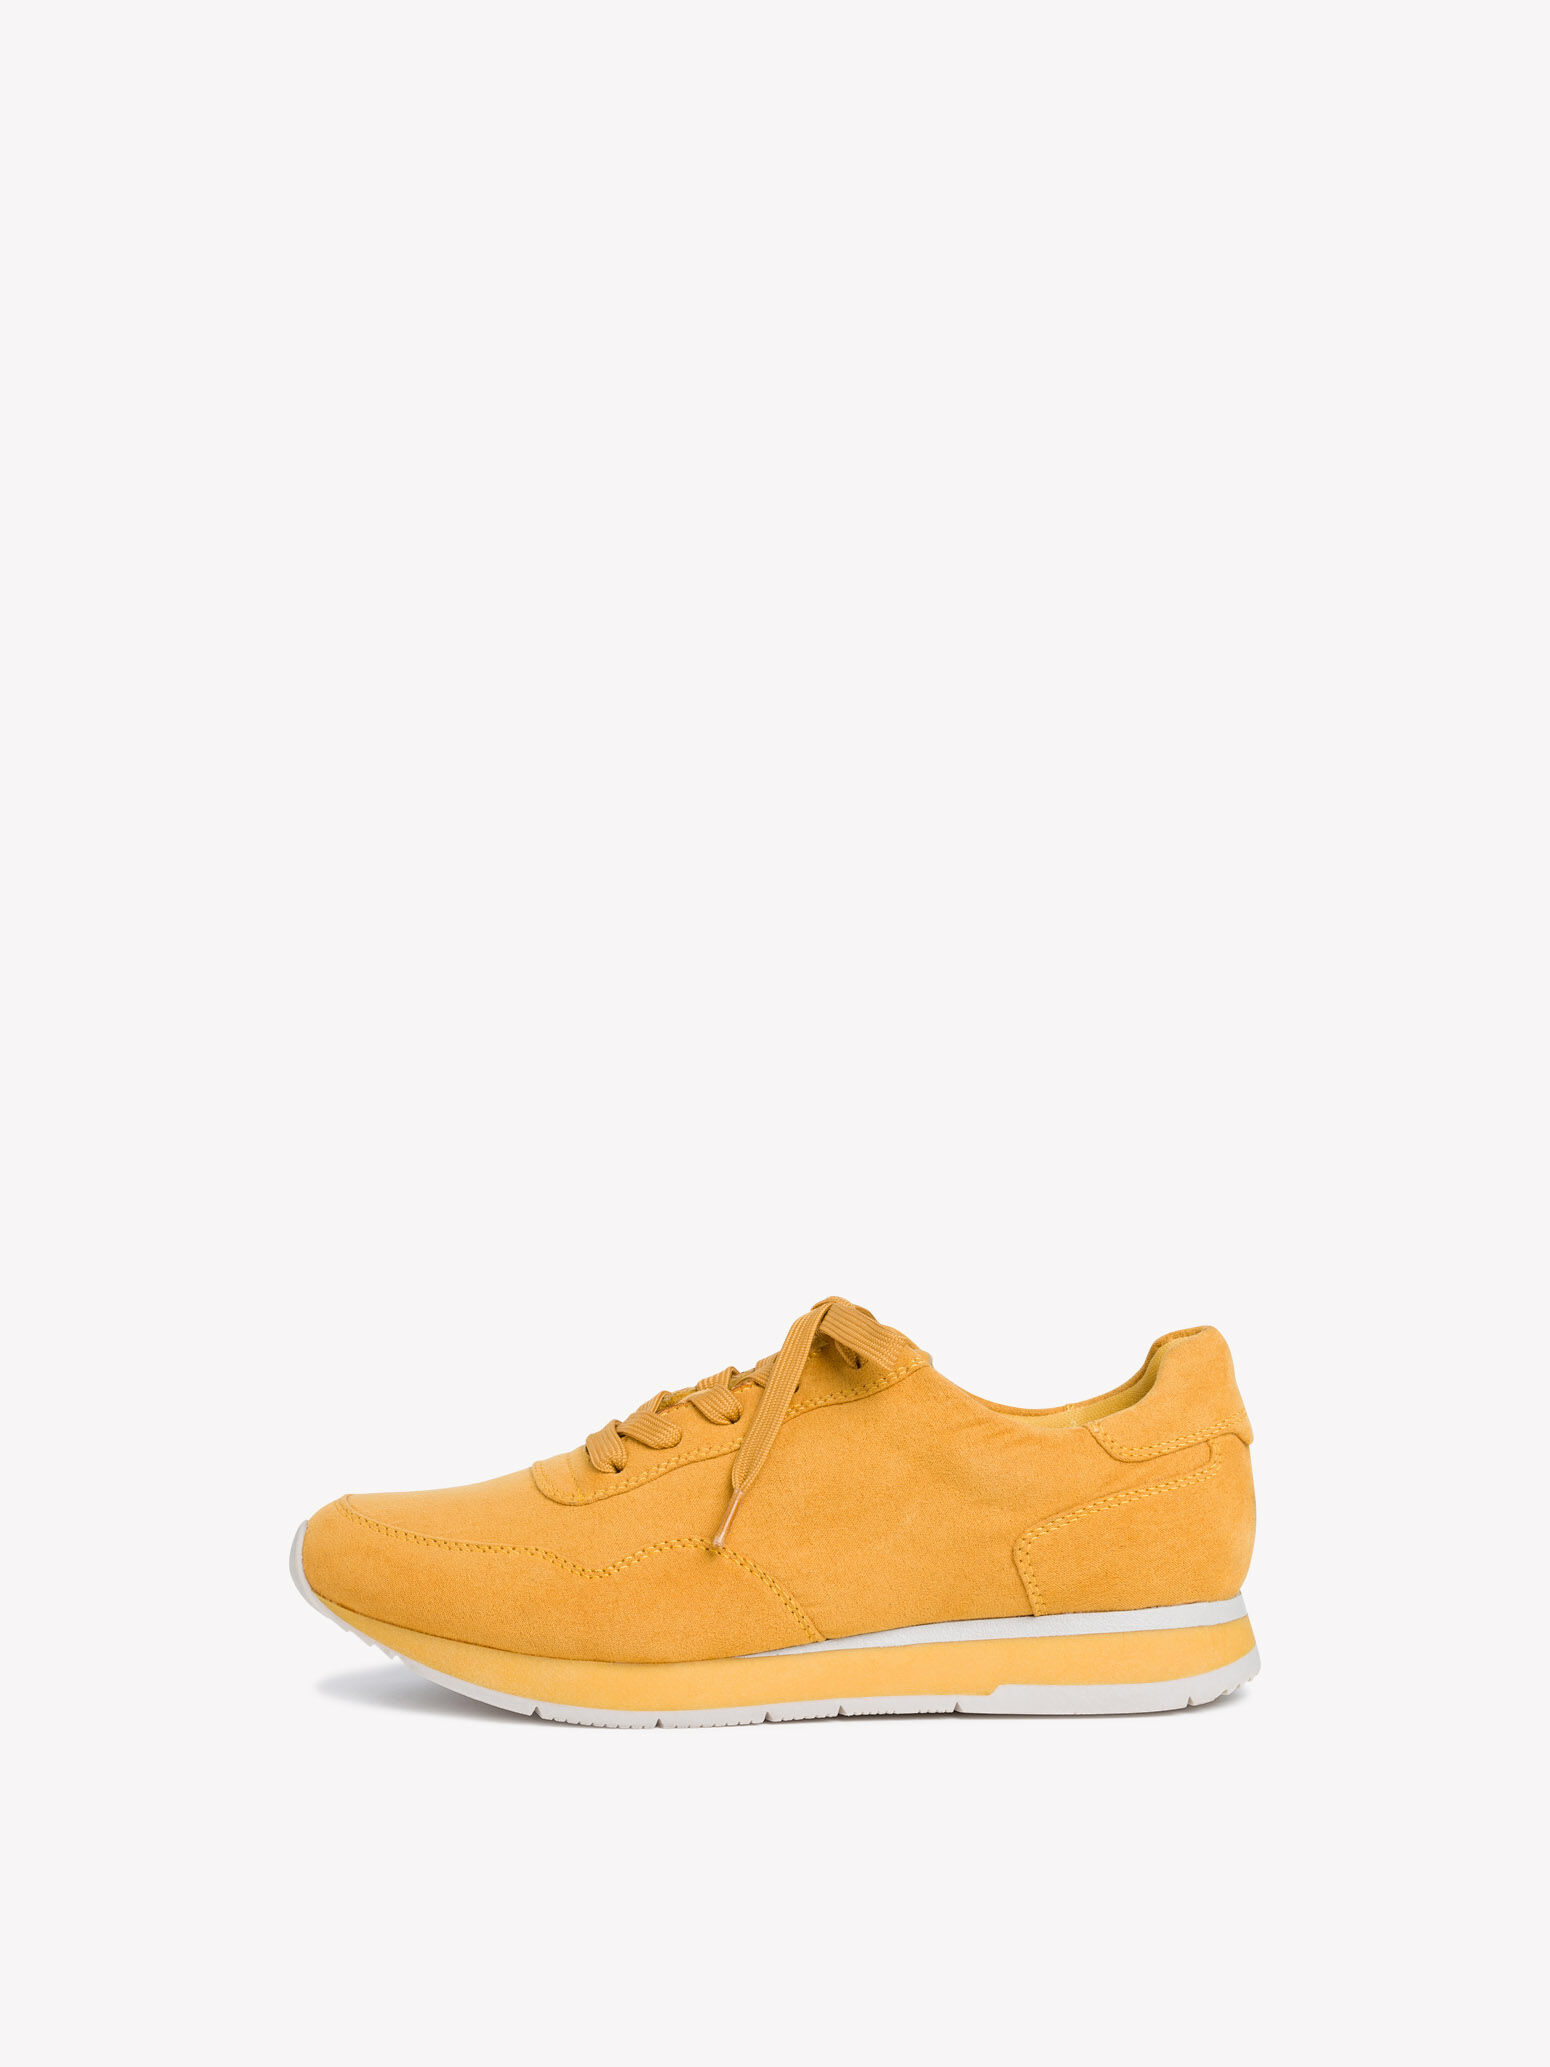 tamaris yellow shoes